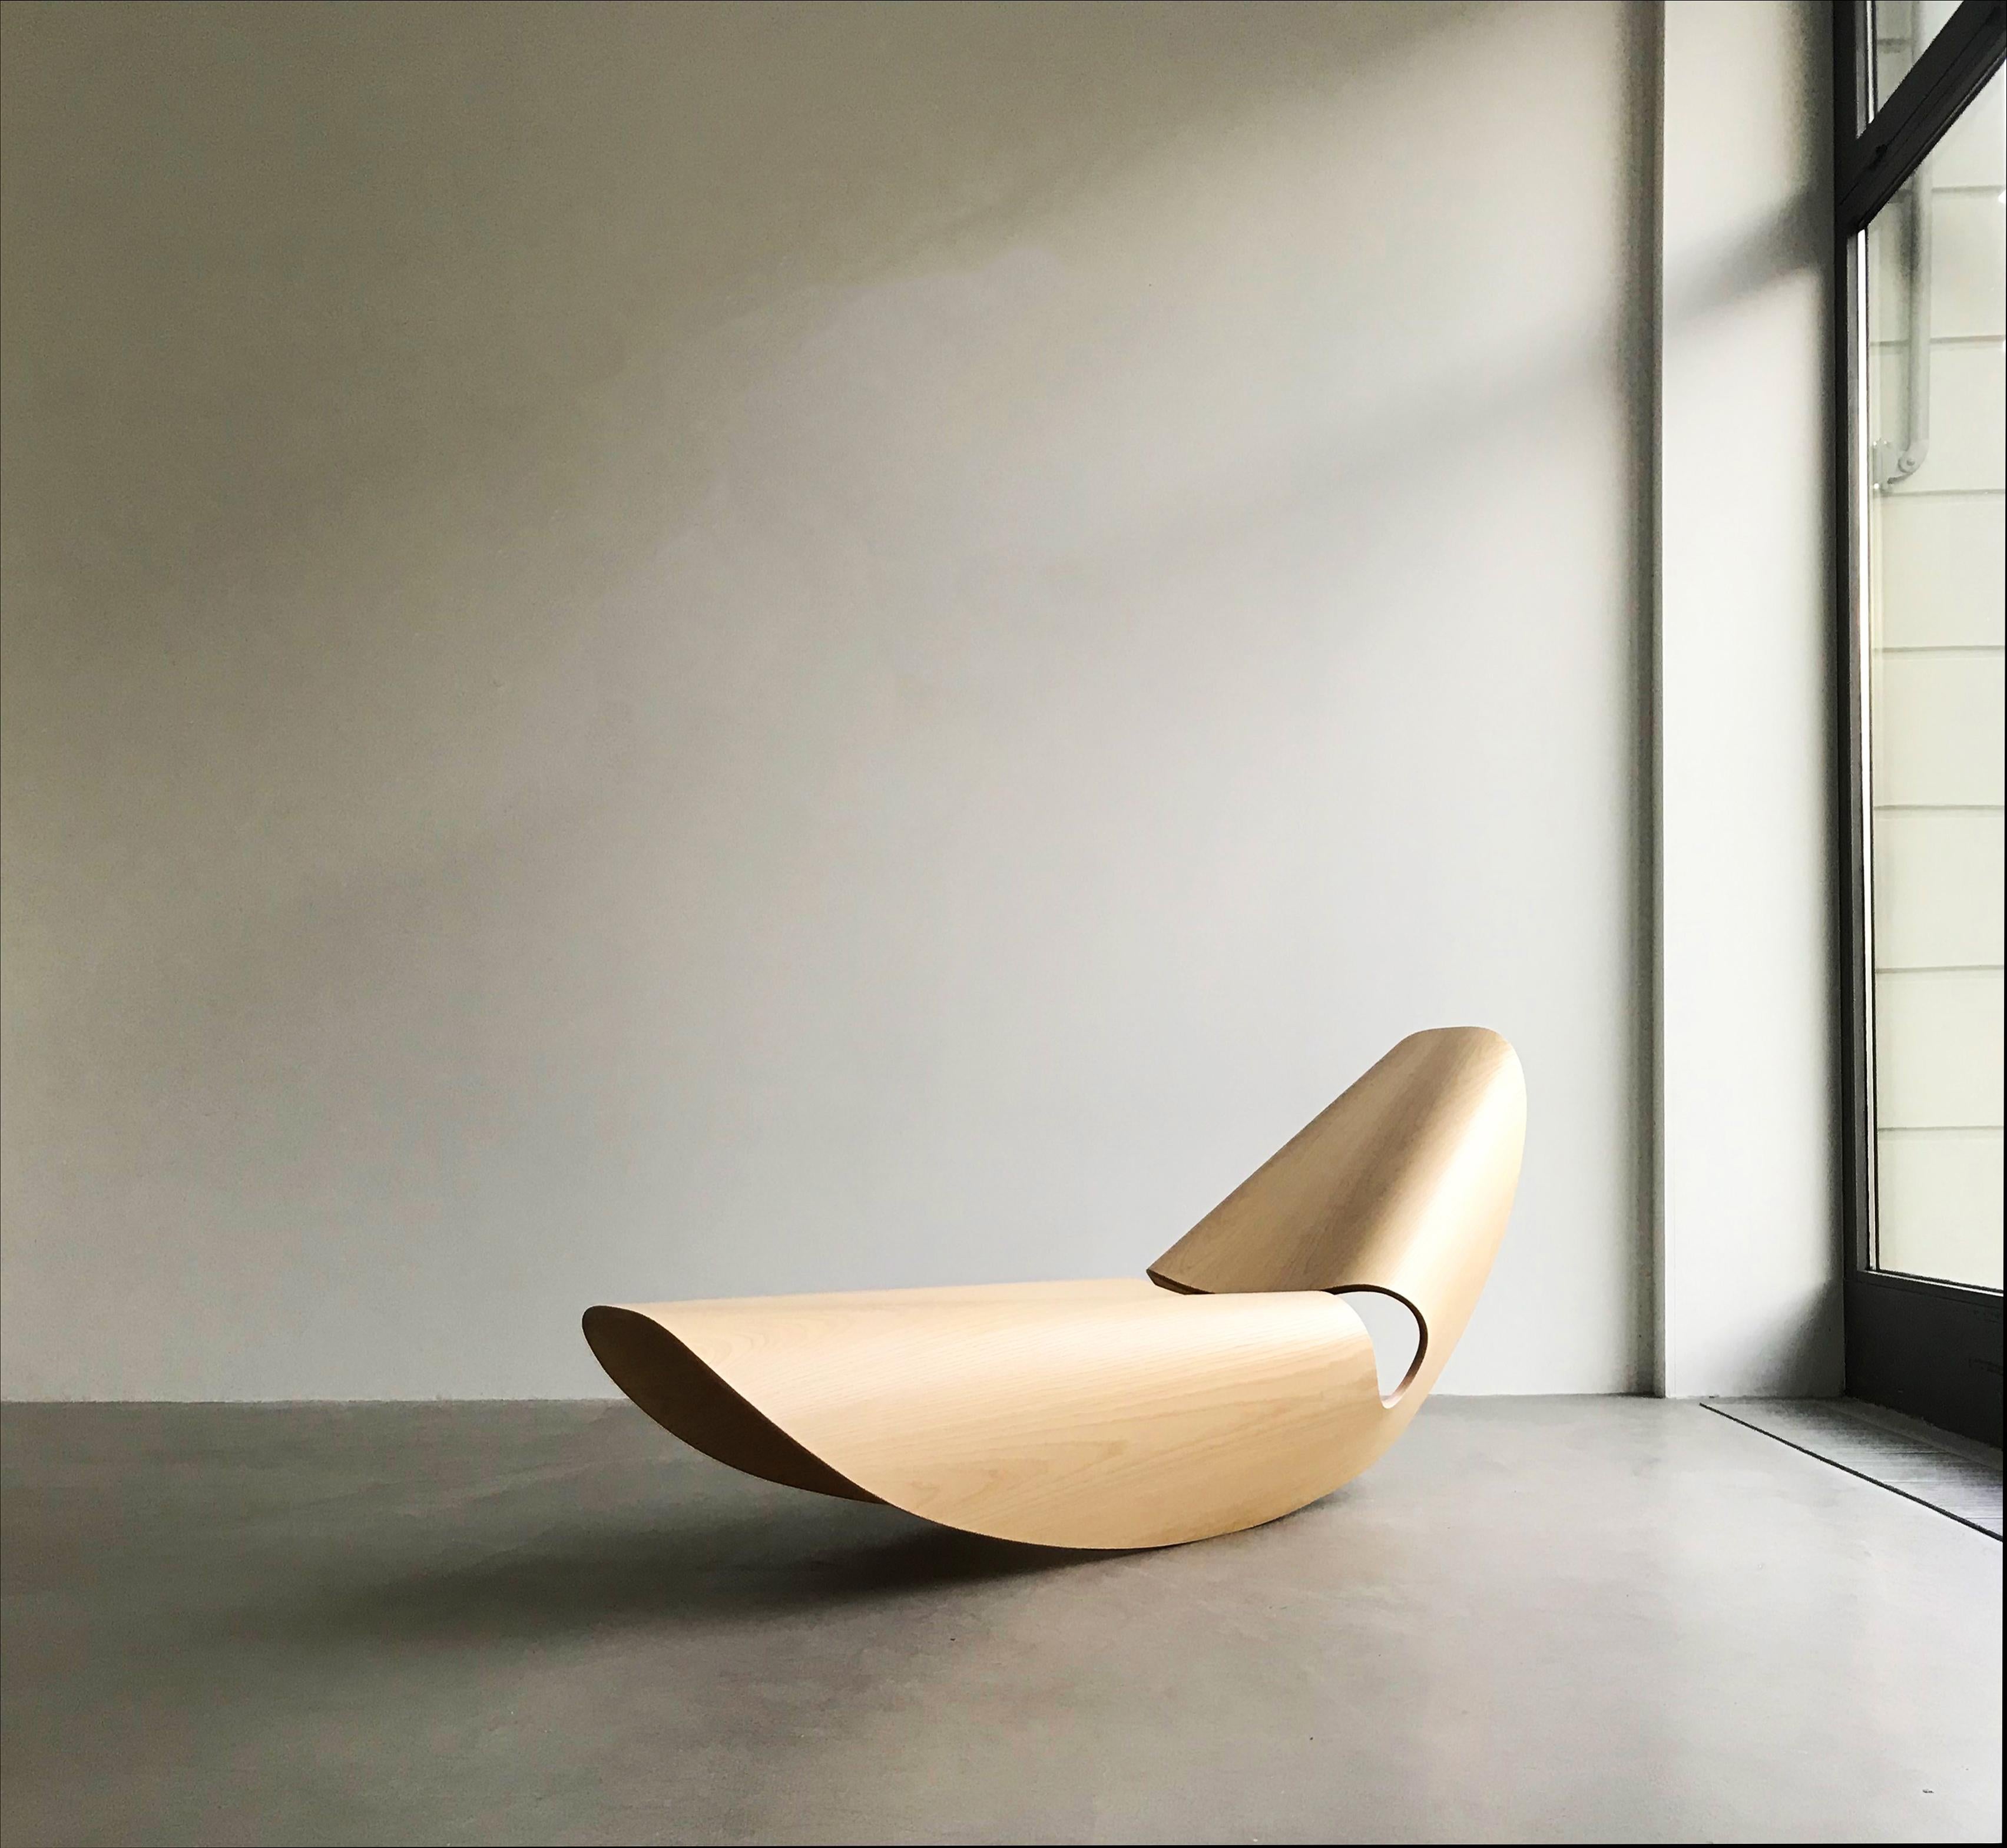 Le Cowrie rocker contemporain est une élégante chaise longue à bascule inspirée des lignes concaves des coquillages. Les formes curvilignes sont le résultat d'un processus de recherche et d'innovation approfondi qui jette un pont entre le fait main